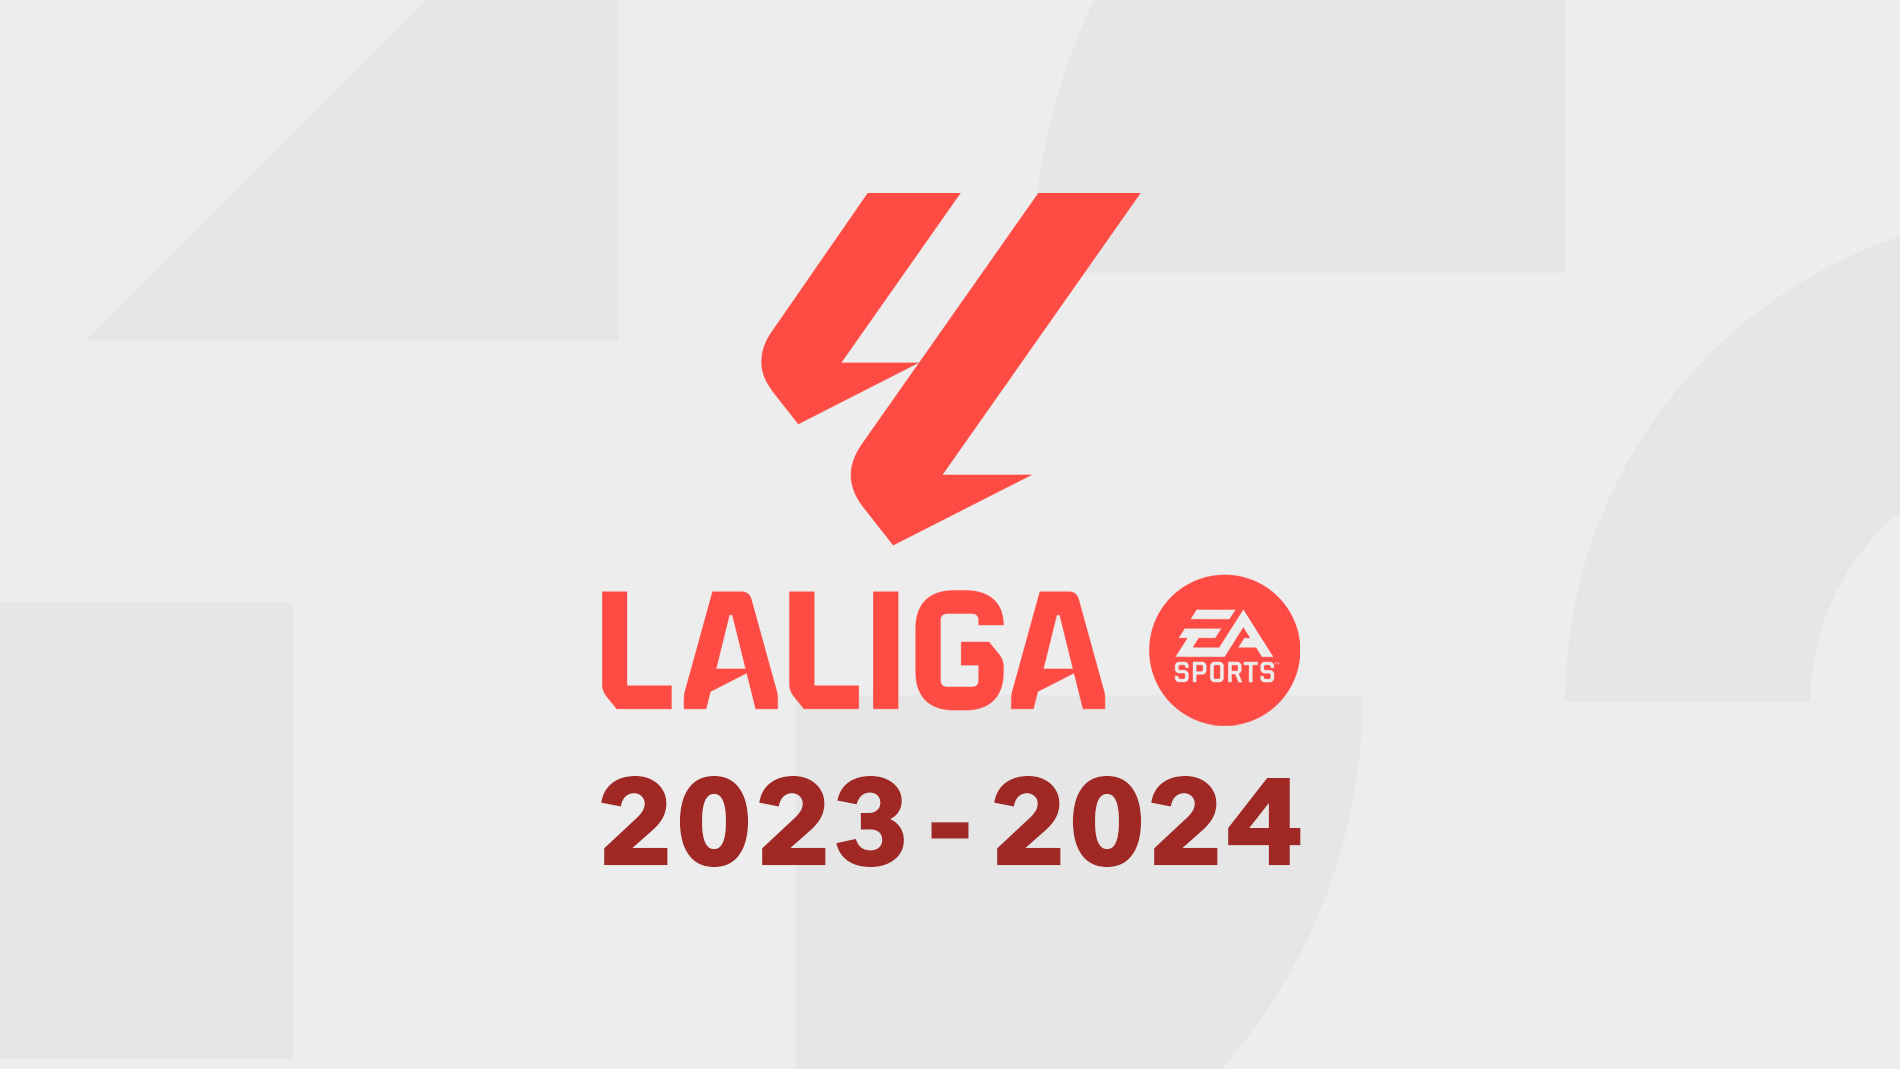 LaLiga 2023/24